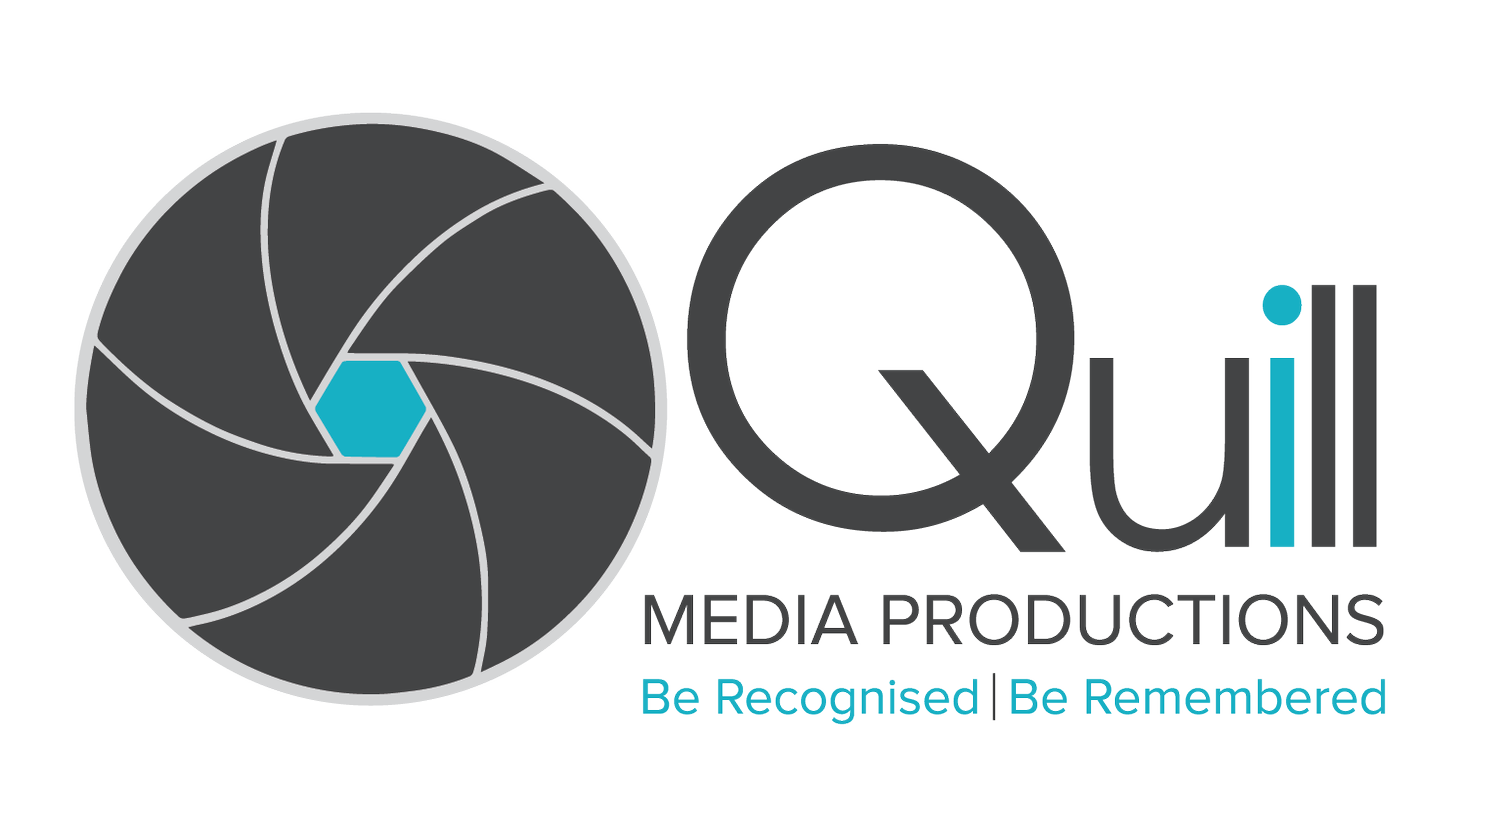 QUILL MEDIA PRODUCTIONS LTD